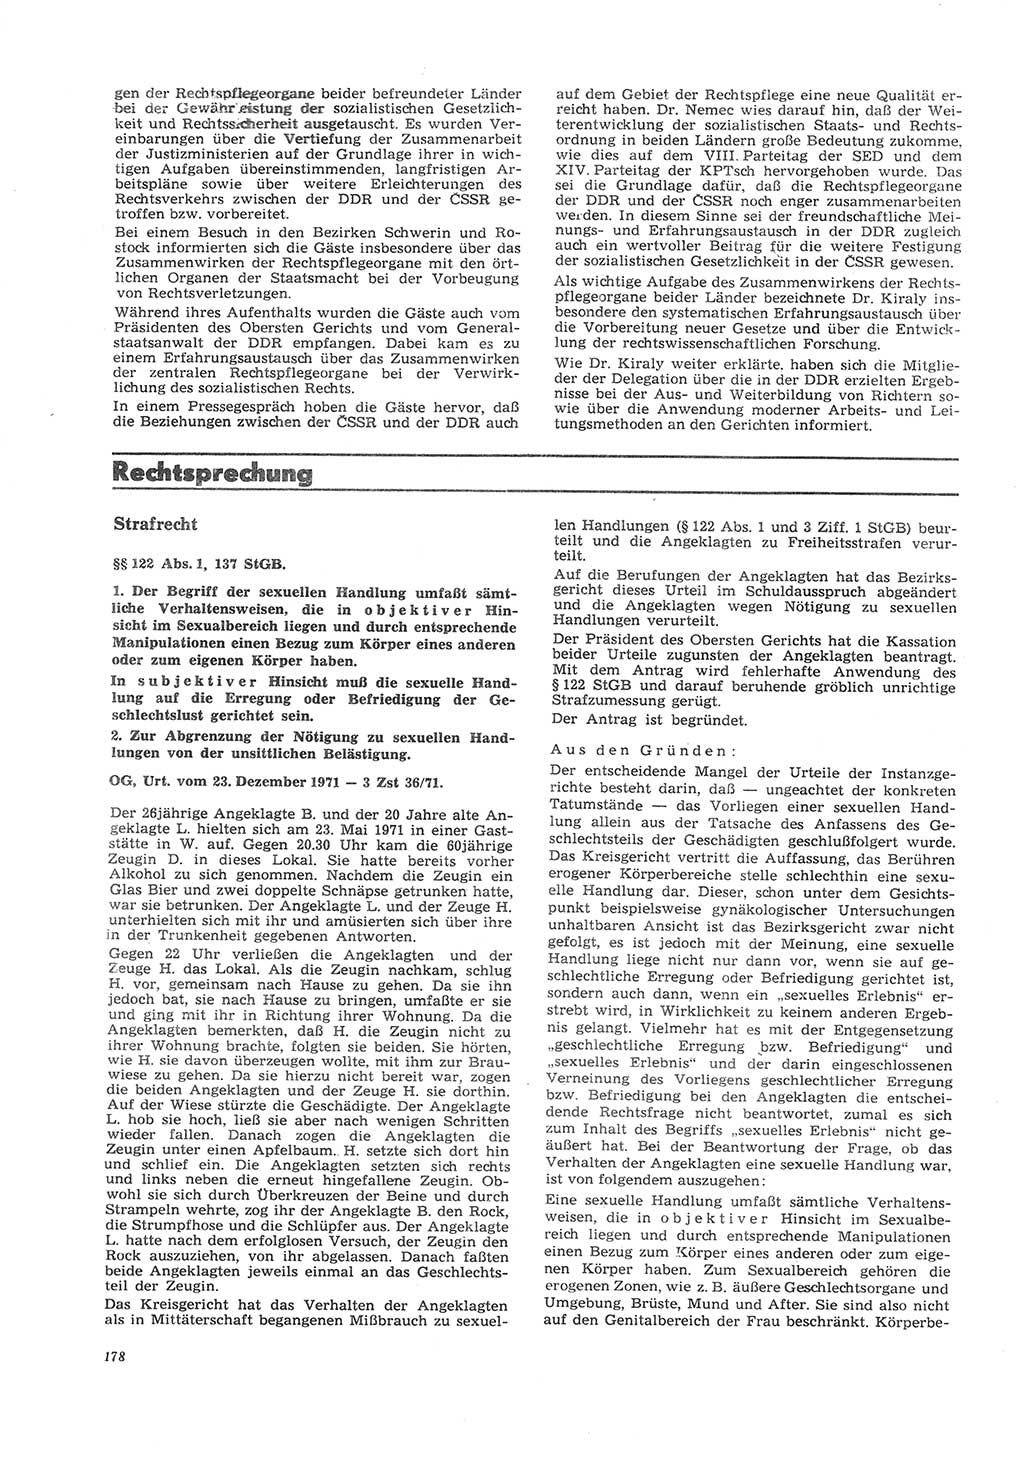 Neue Justiz (NJ), Zeitschrift für Recht und Rechtswissenschaft [Deutsche Demokratische Republik (DDR)], 26. Jahrgang 1972, Seite 178 (NJ DDR 1972, S. 178)